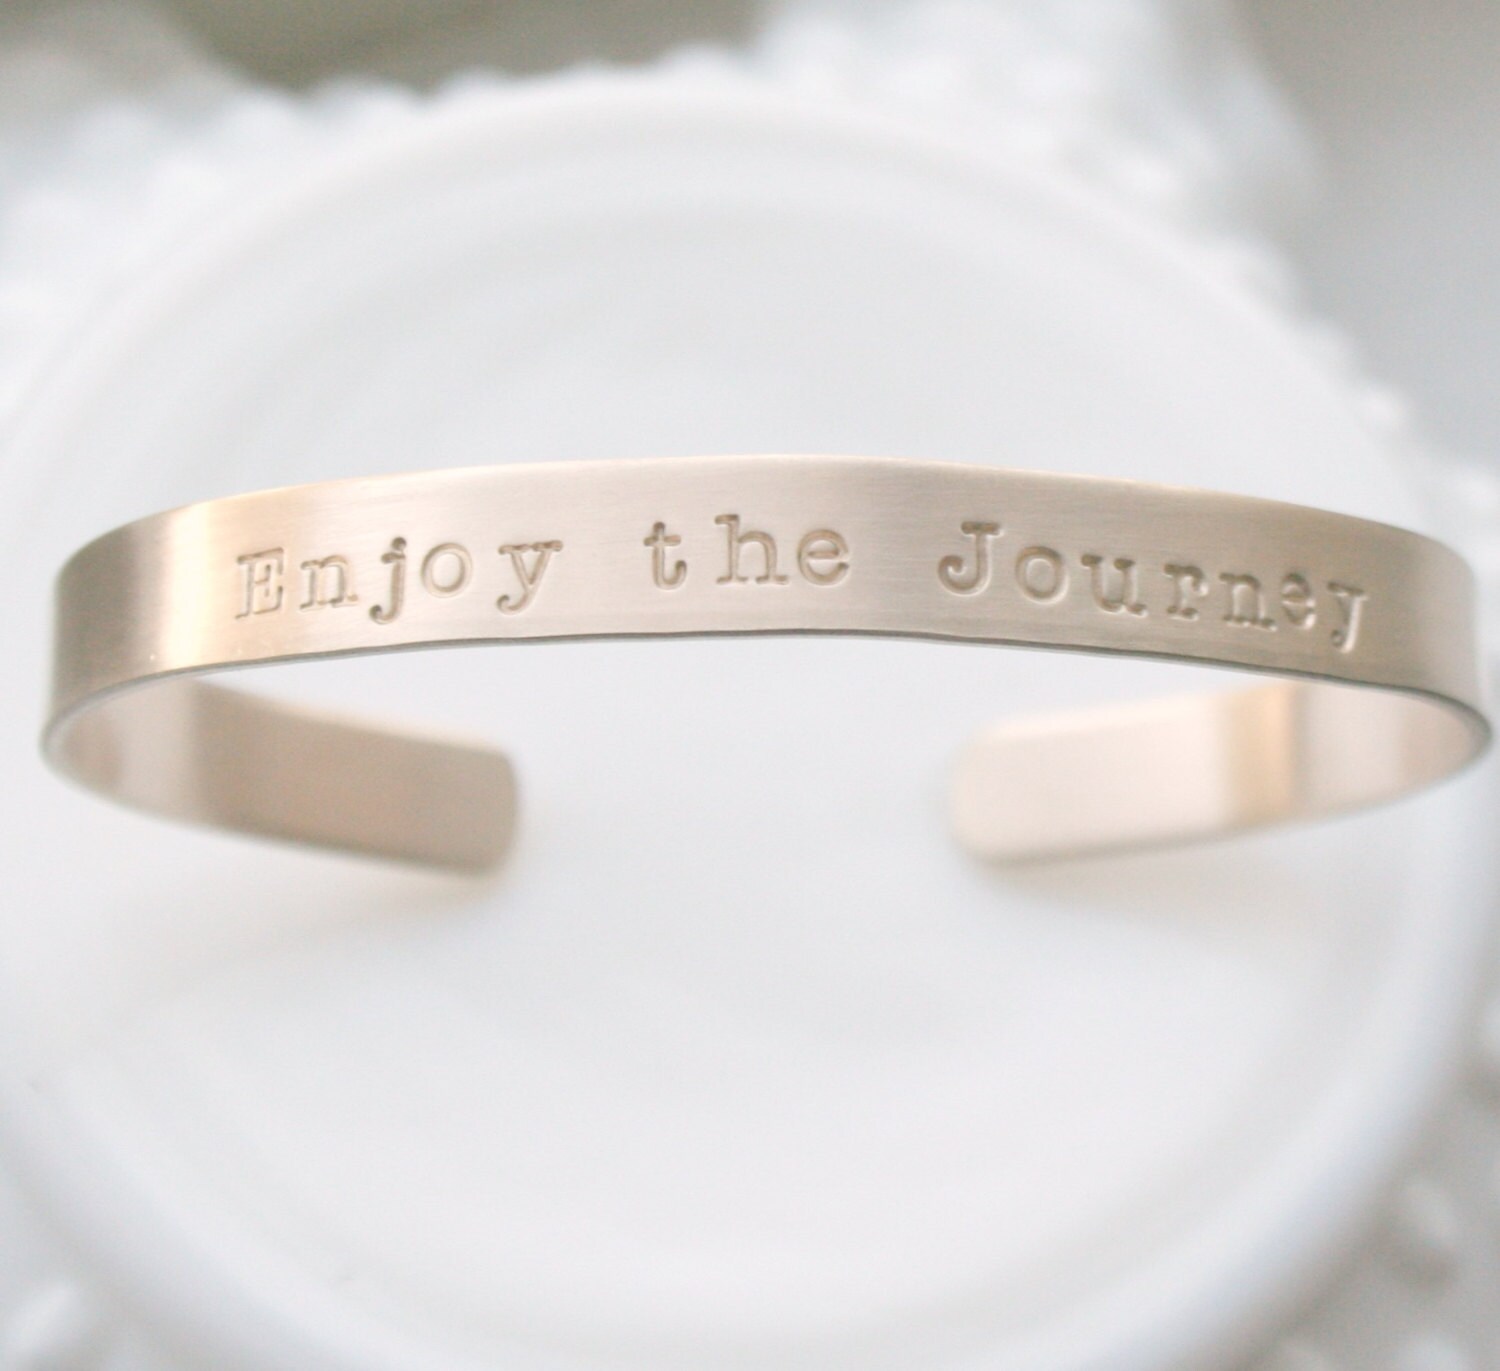 Inspirational Jewelry Enjoy the Journey Gold Bracelet | Etsy